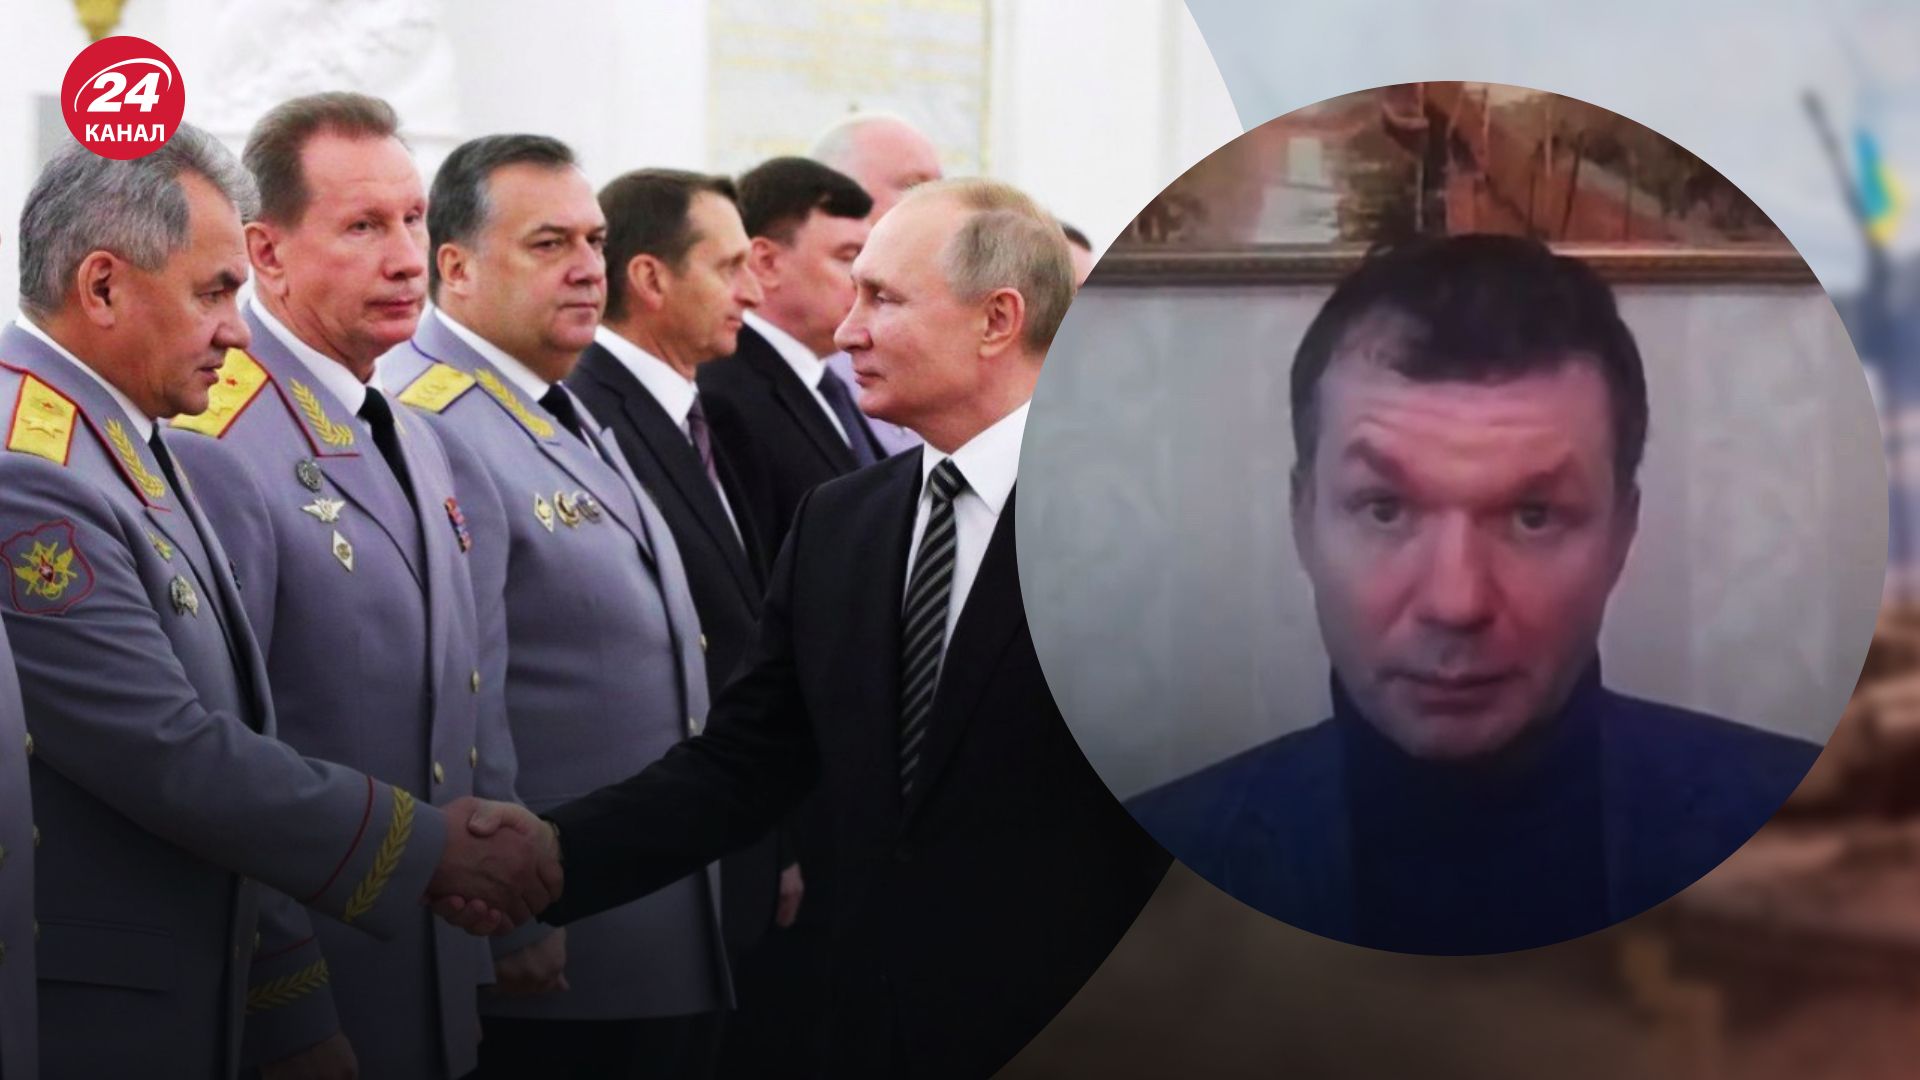 Конфлікт між силовиками у Кремлі – Іван Ус пояснив, чи визнає Росія поразку у війні - 24 Канал